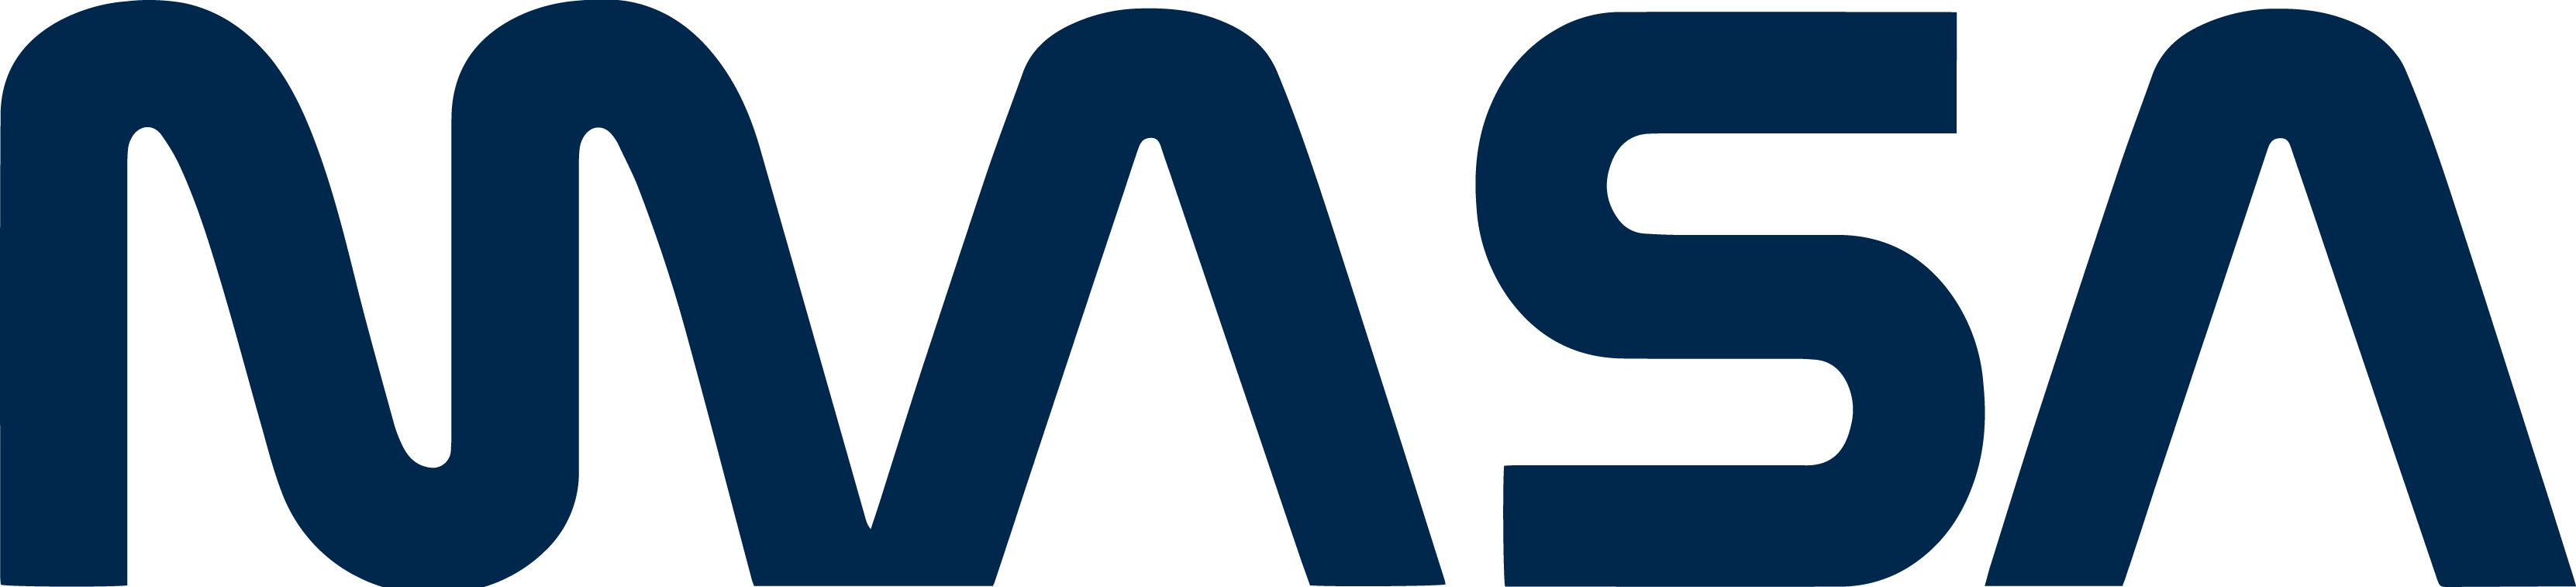 MASA Worm Logo Blue